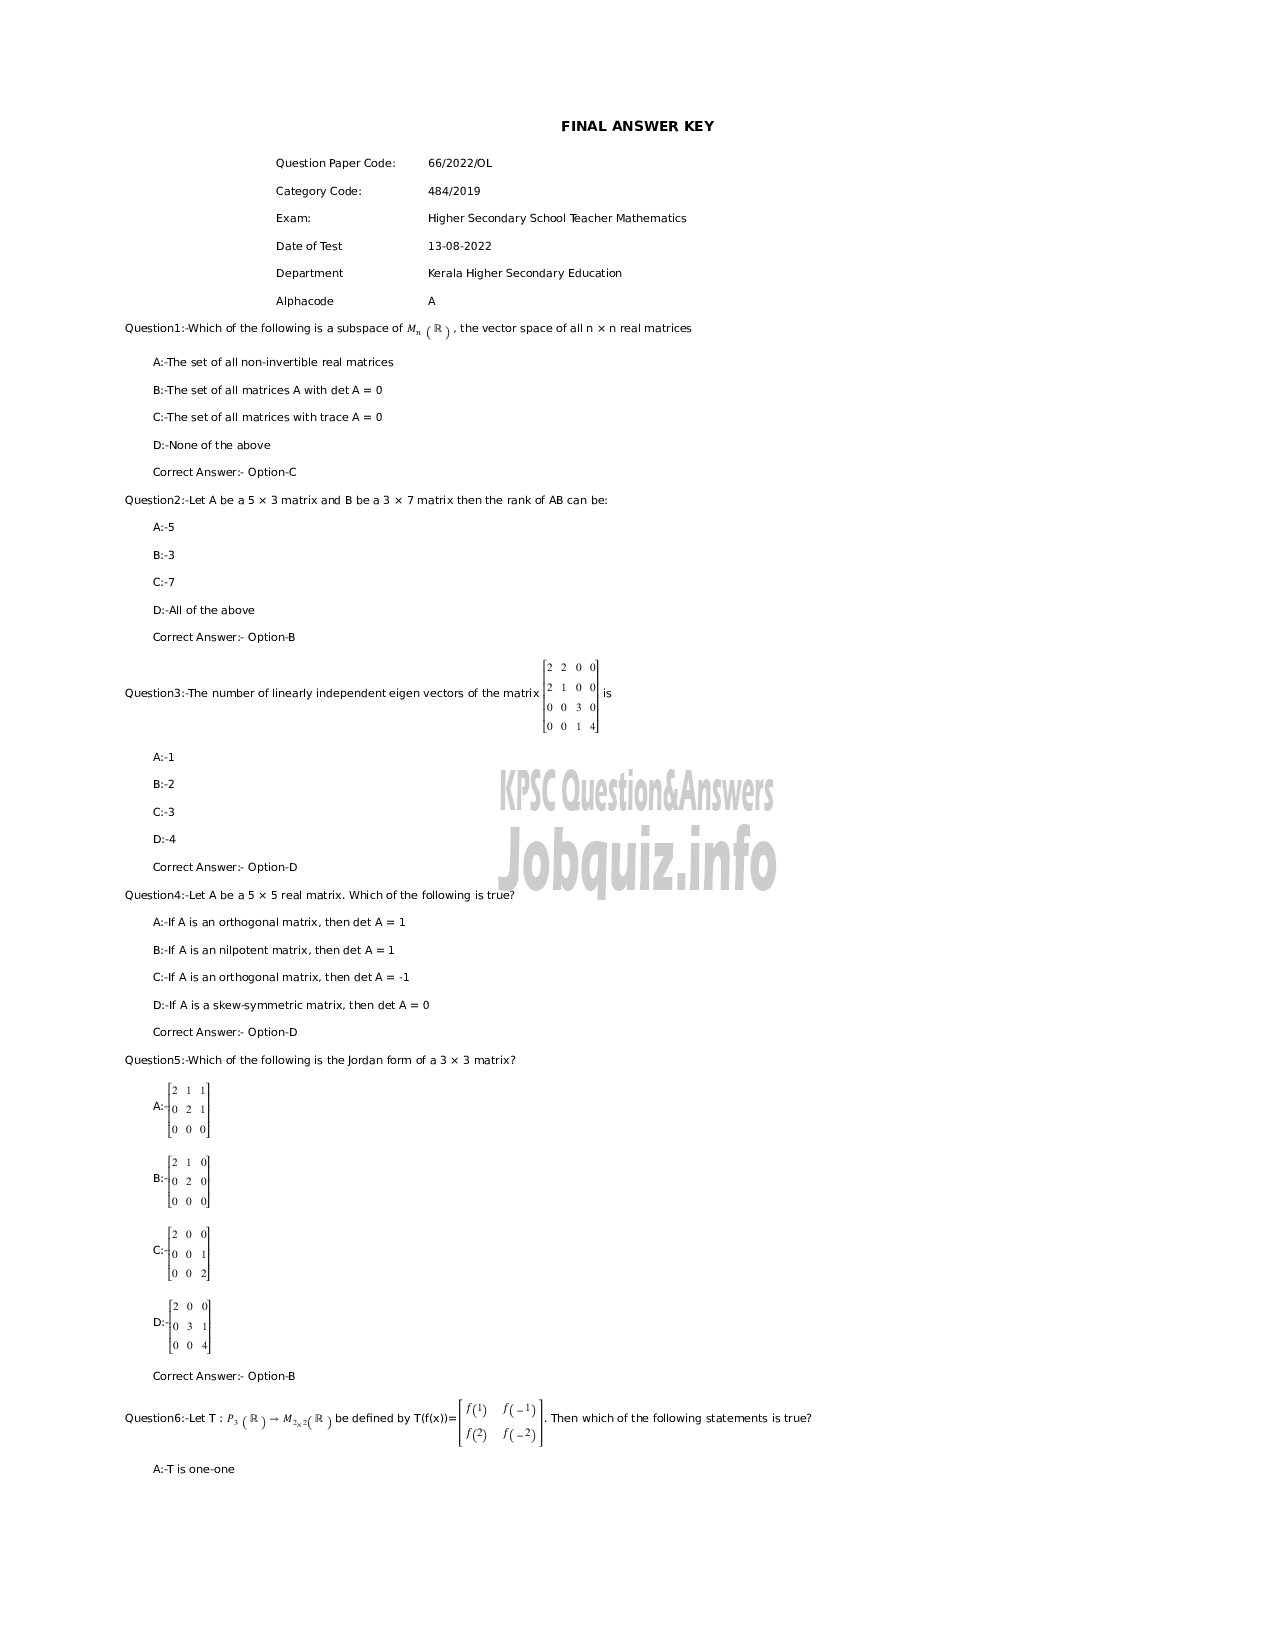 Kerala PSC Question Paper - Higher Secondary School Teacher Mathematics-1